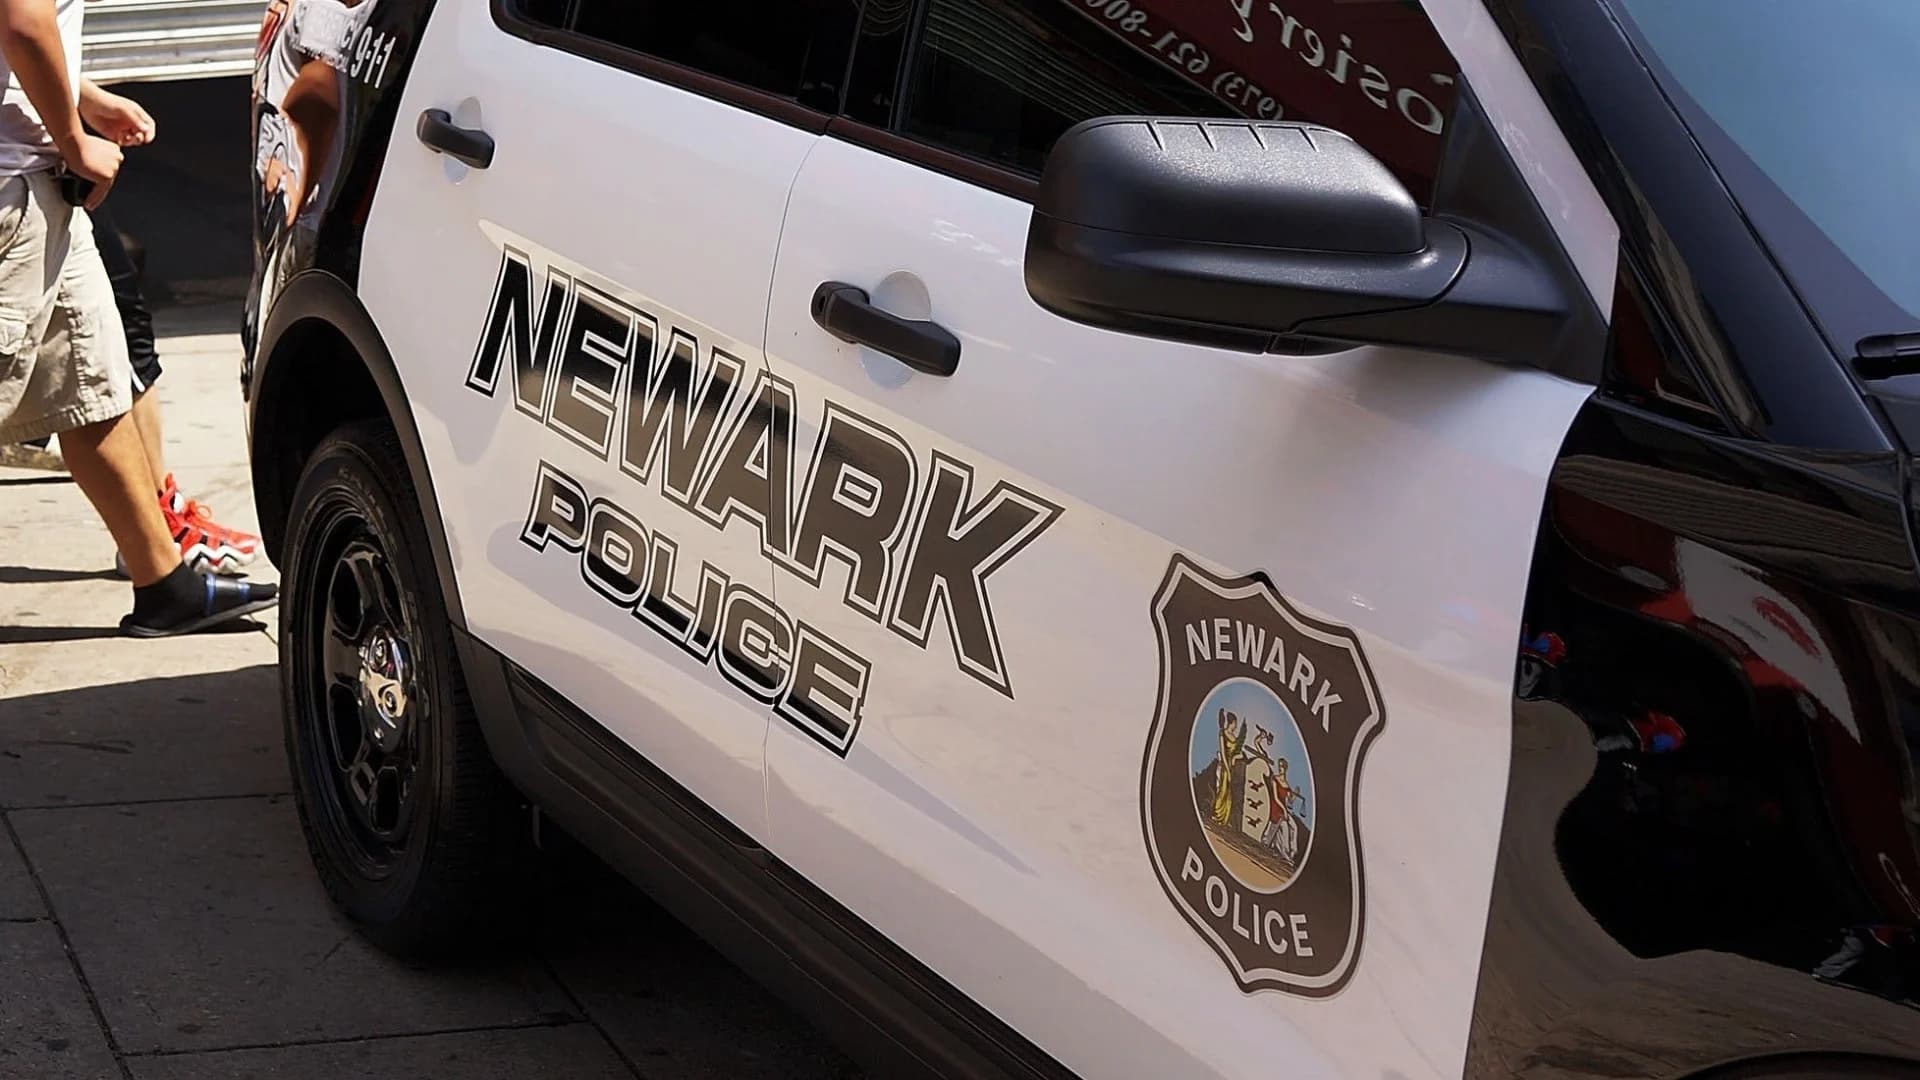 Newark police captain admits improperly accessing database